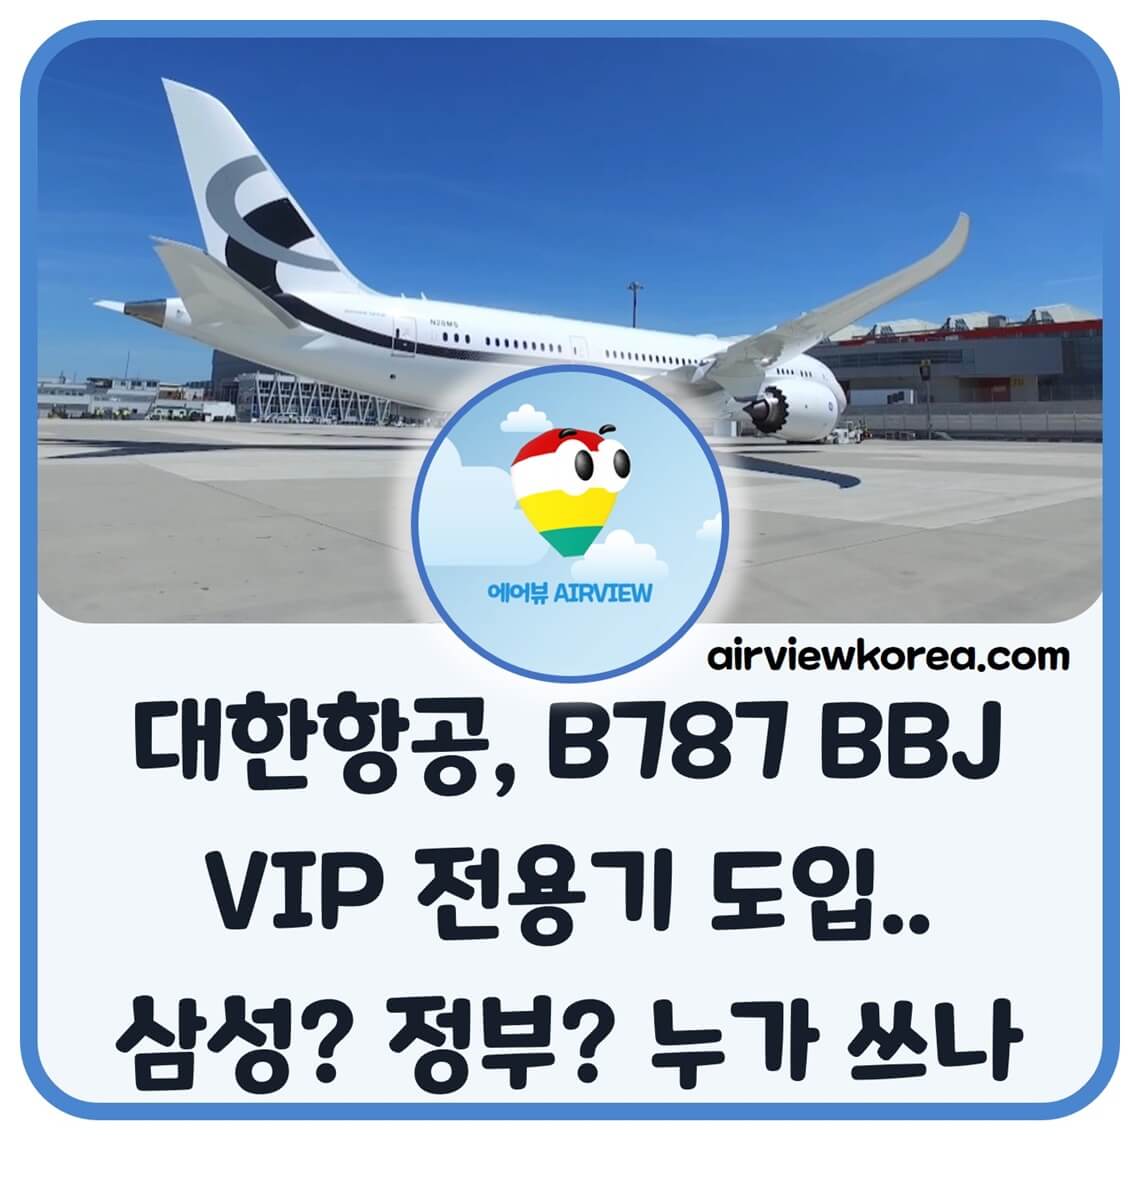 대한항공 B787 BBJ VIP용 전용기 도입 설명하는 글의 제목